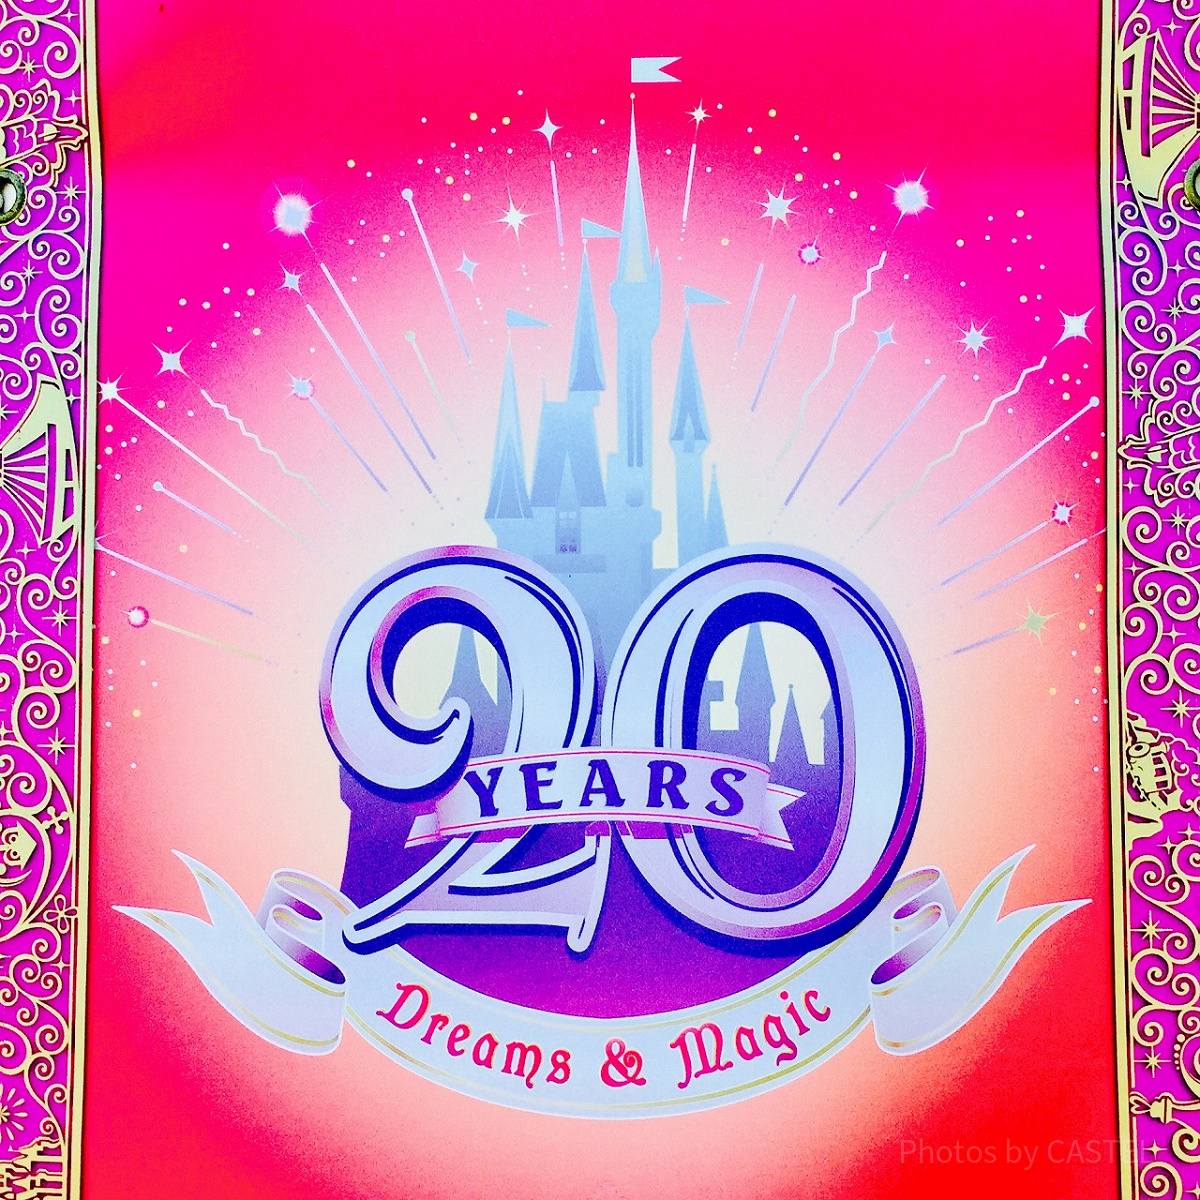 ディズニーランドの20周年ロゴ